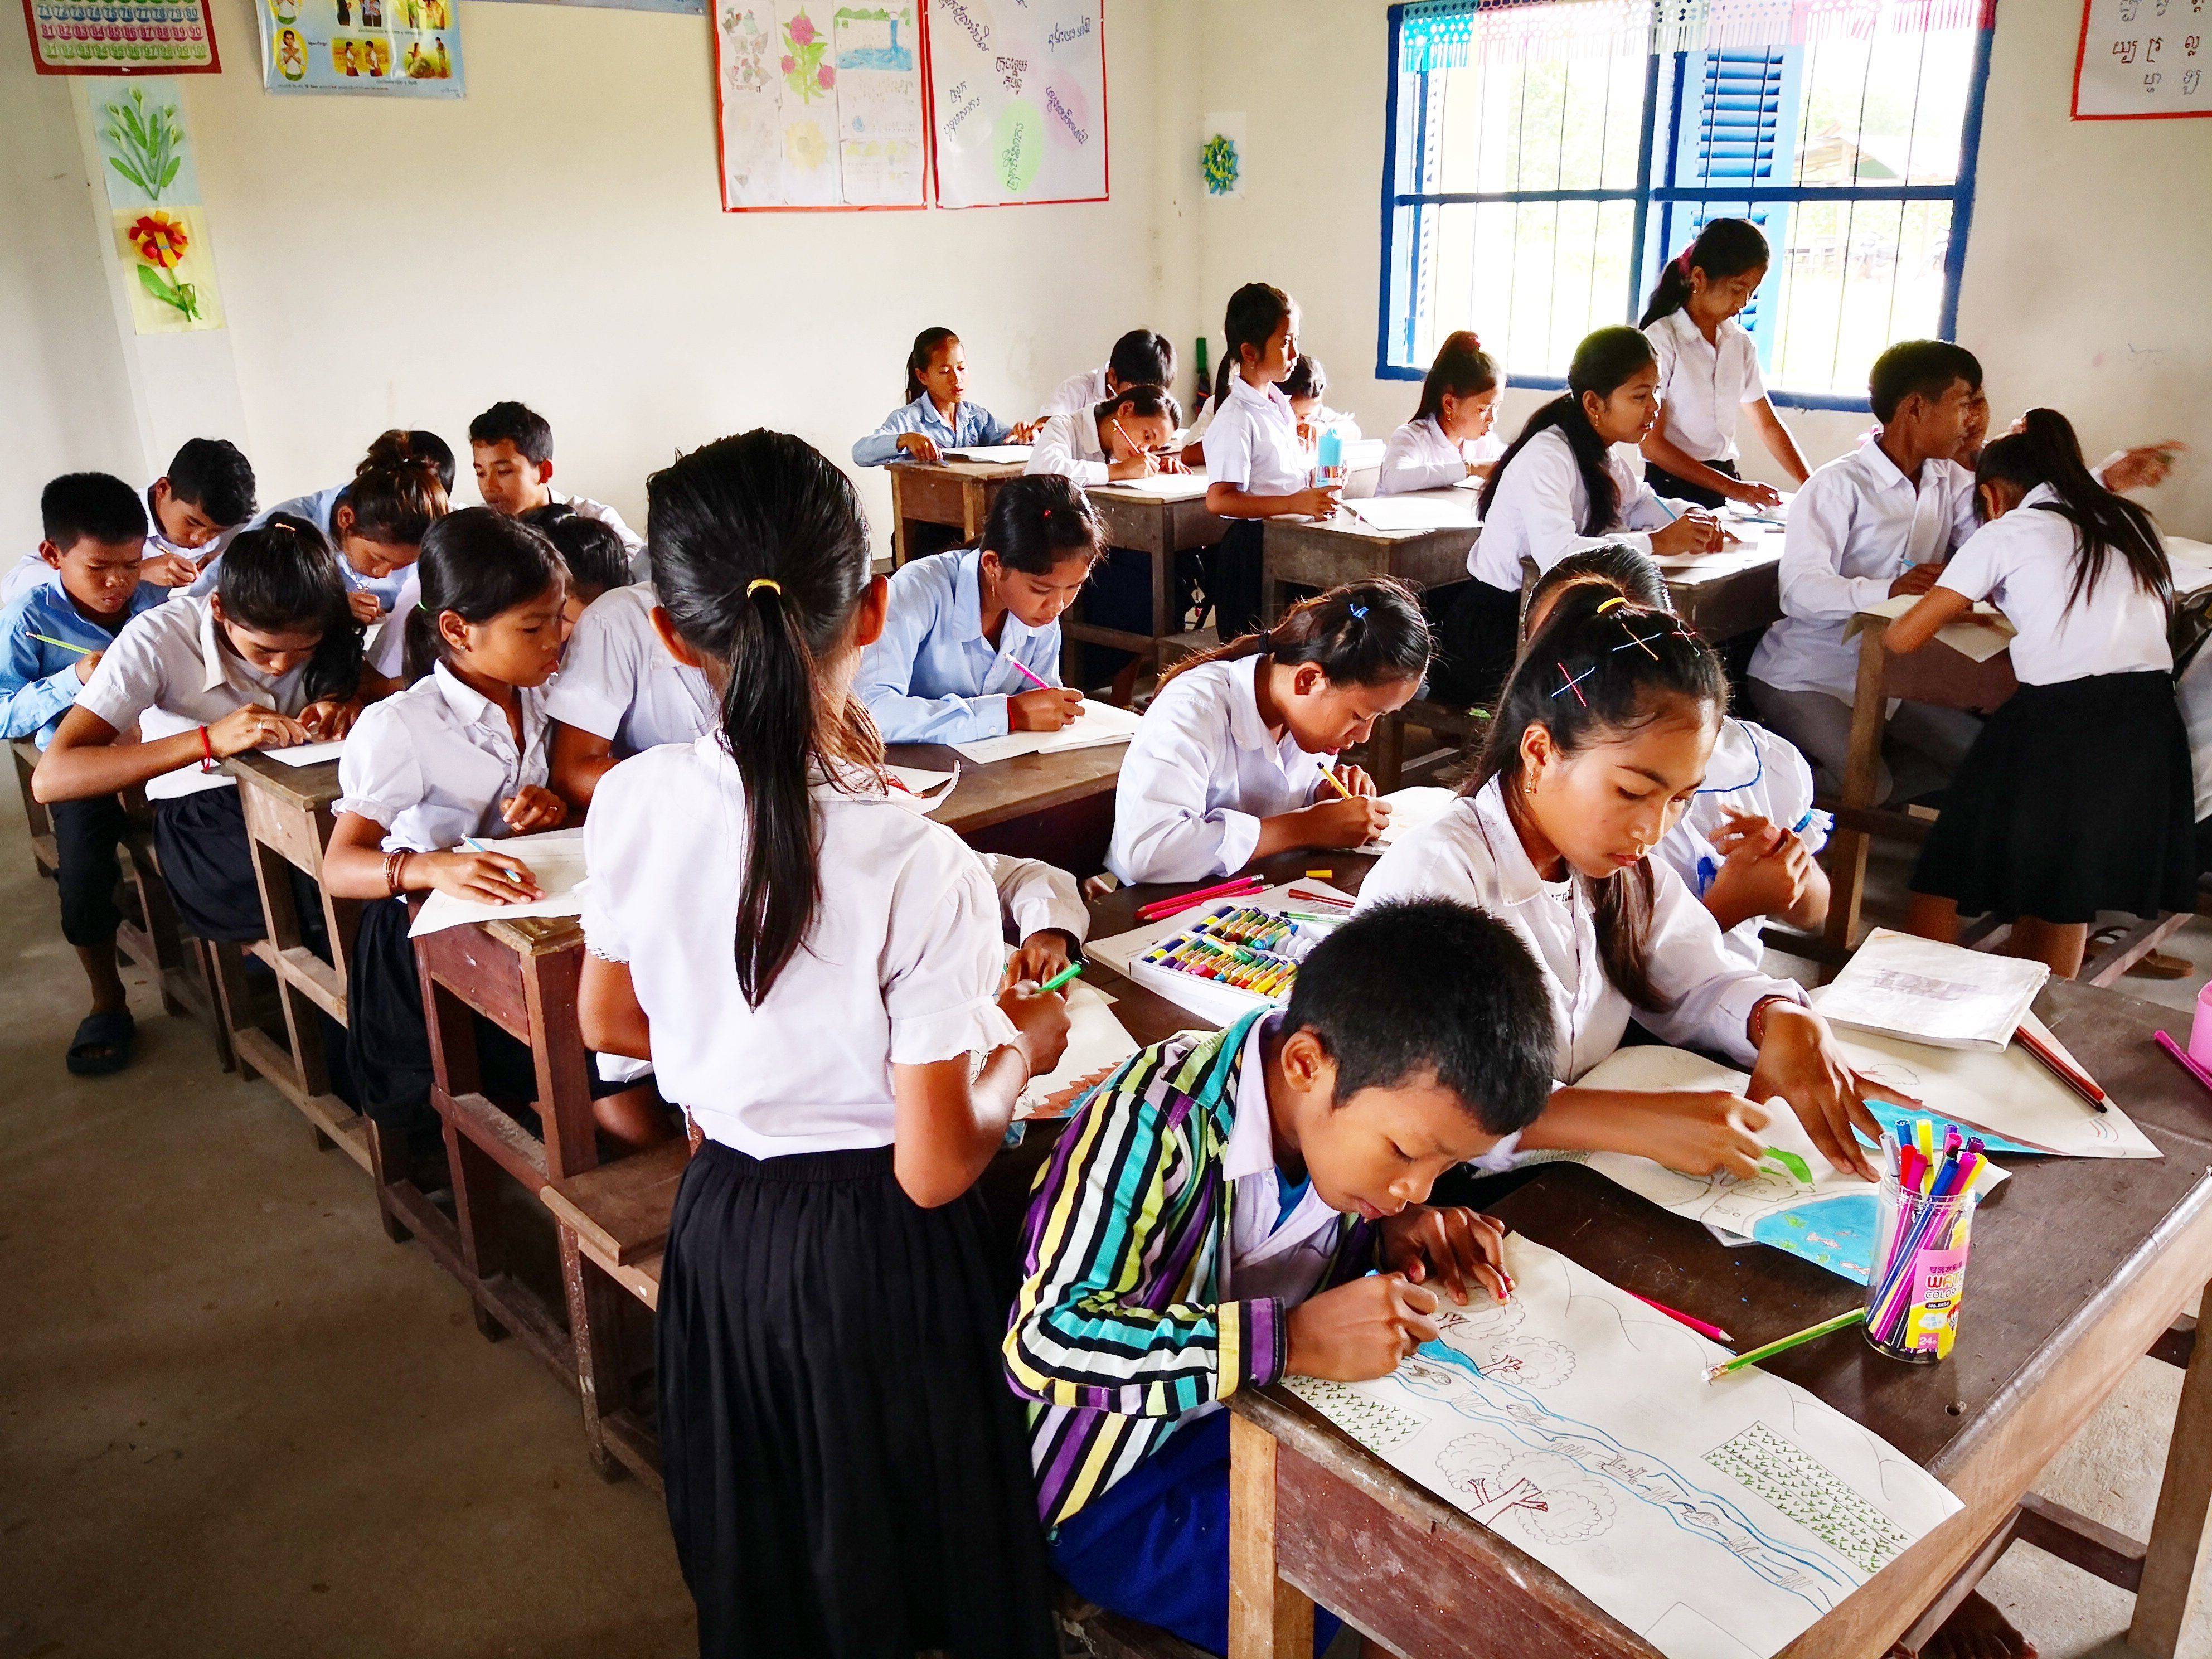   与家人一起探索柬埔寨七星海的教育价值和娱乐亮点。 